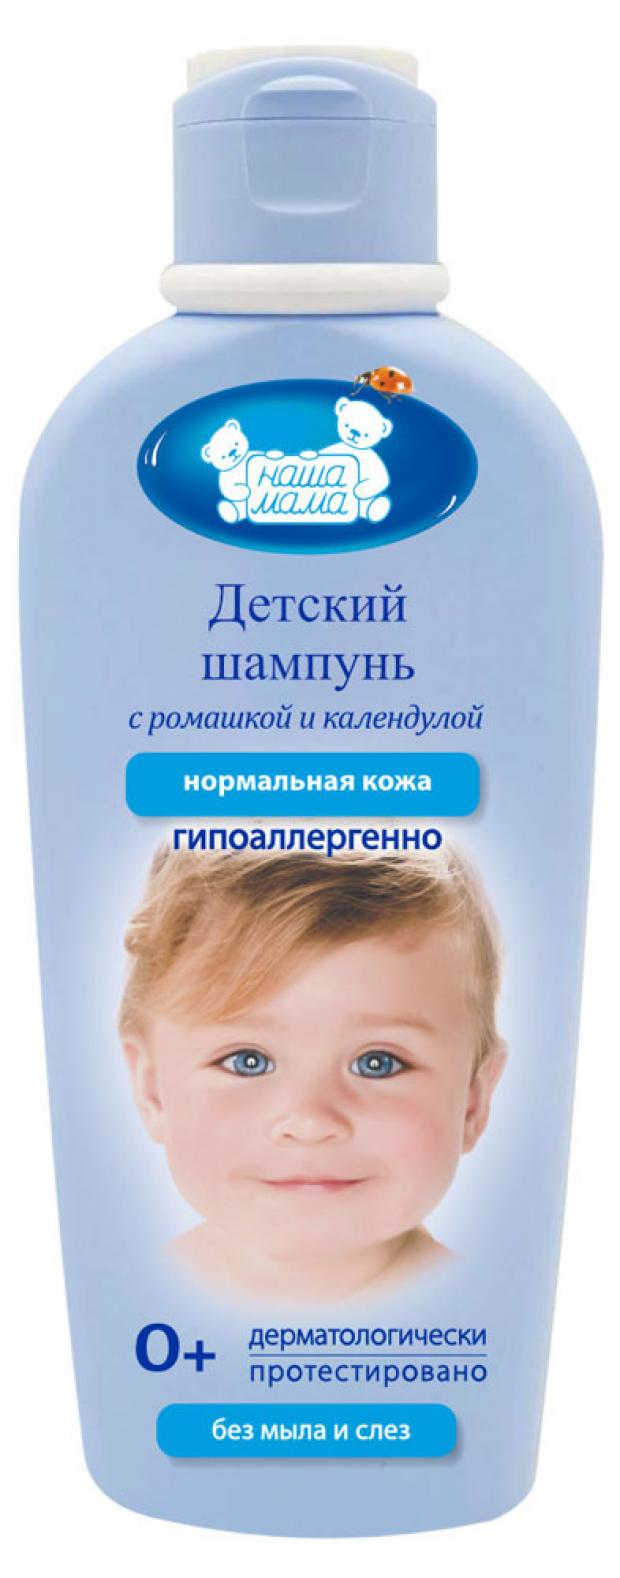 Шампунь для волос детский «Наша мама», 250 мл